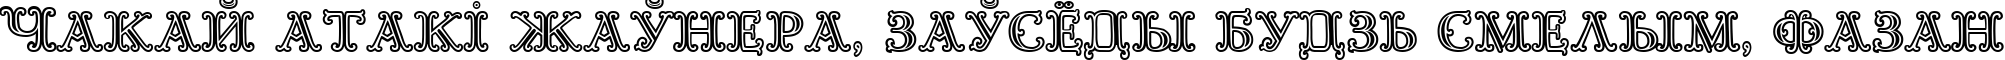 Пример написания шрифтом Goudy Decor InitialC текста на белорусском